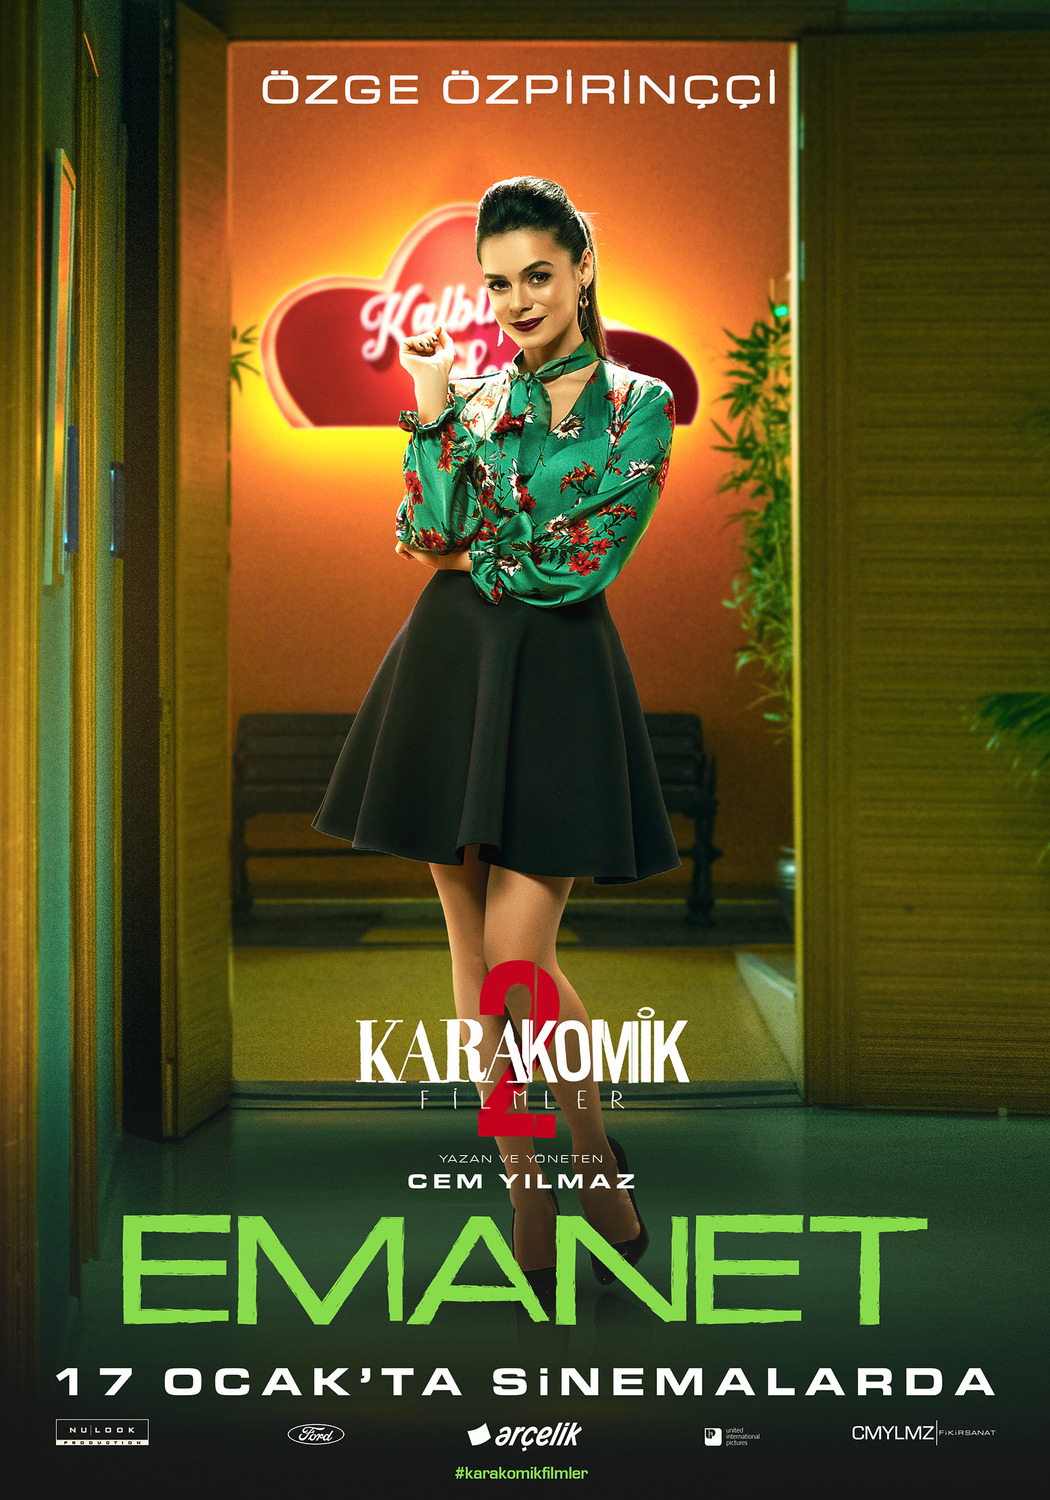 Extra Large Movie Poster Image for Karakomik Filmler: Emanet (#4 of 5)